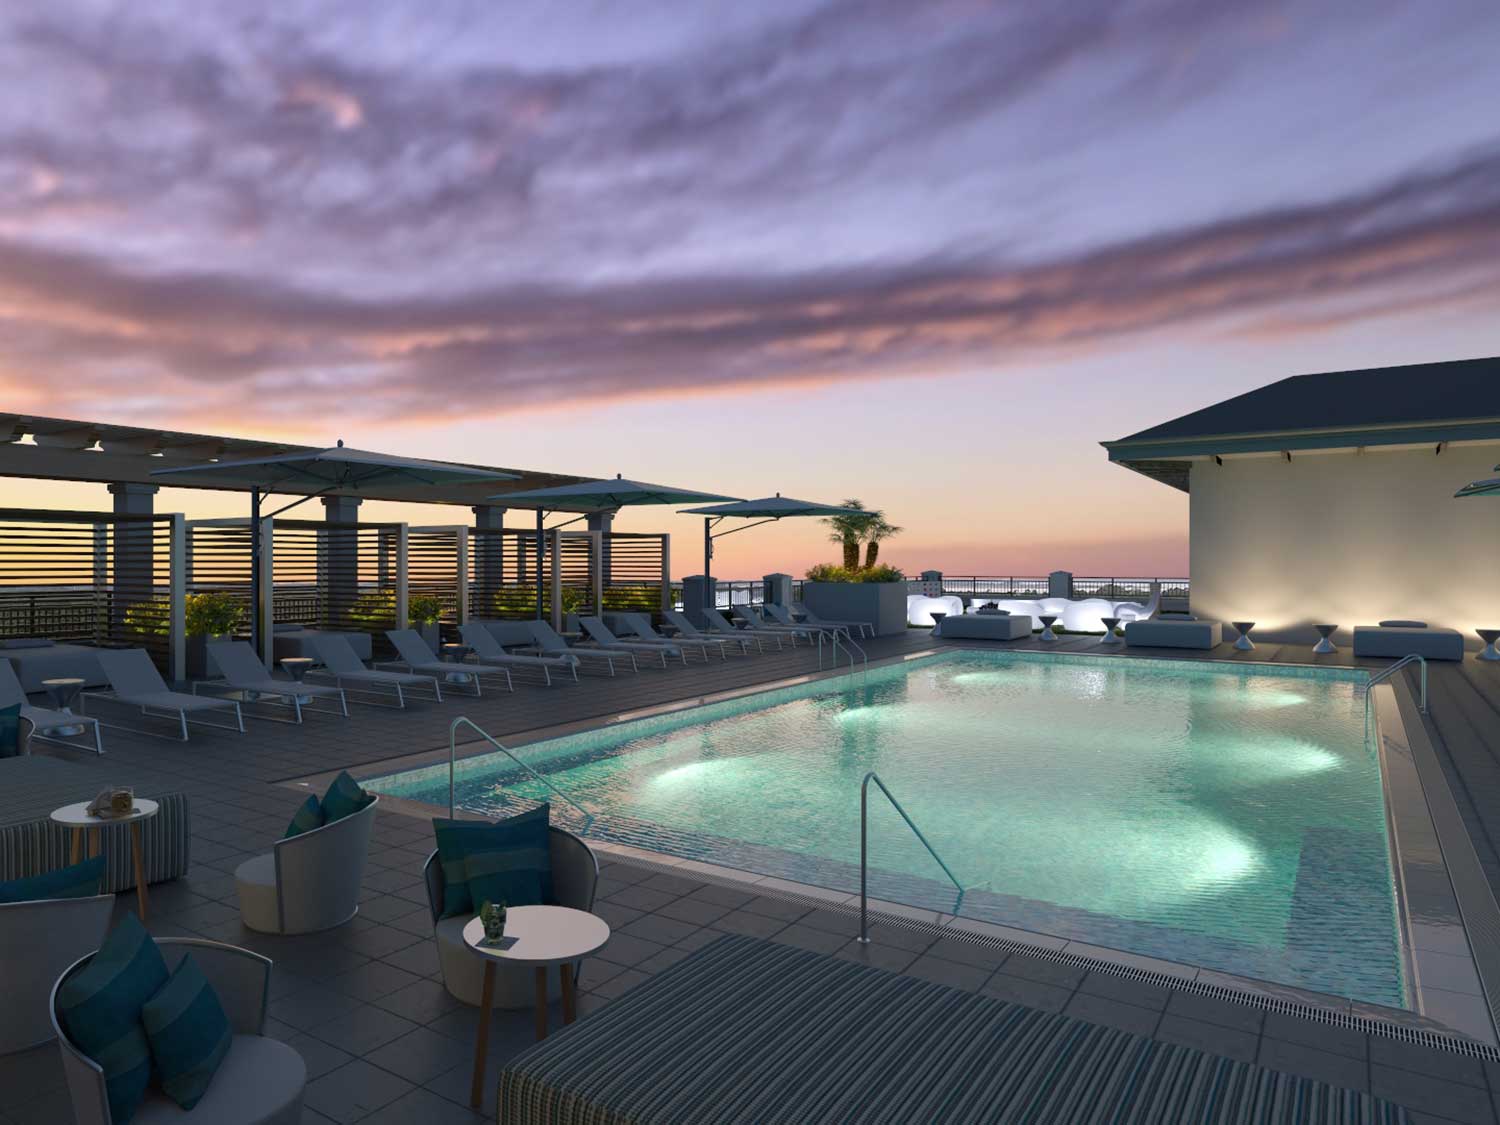 Hotel Effie has an incredible rooftop pool